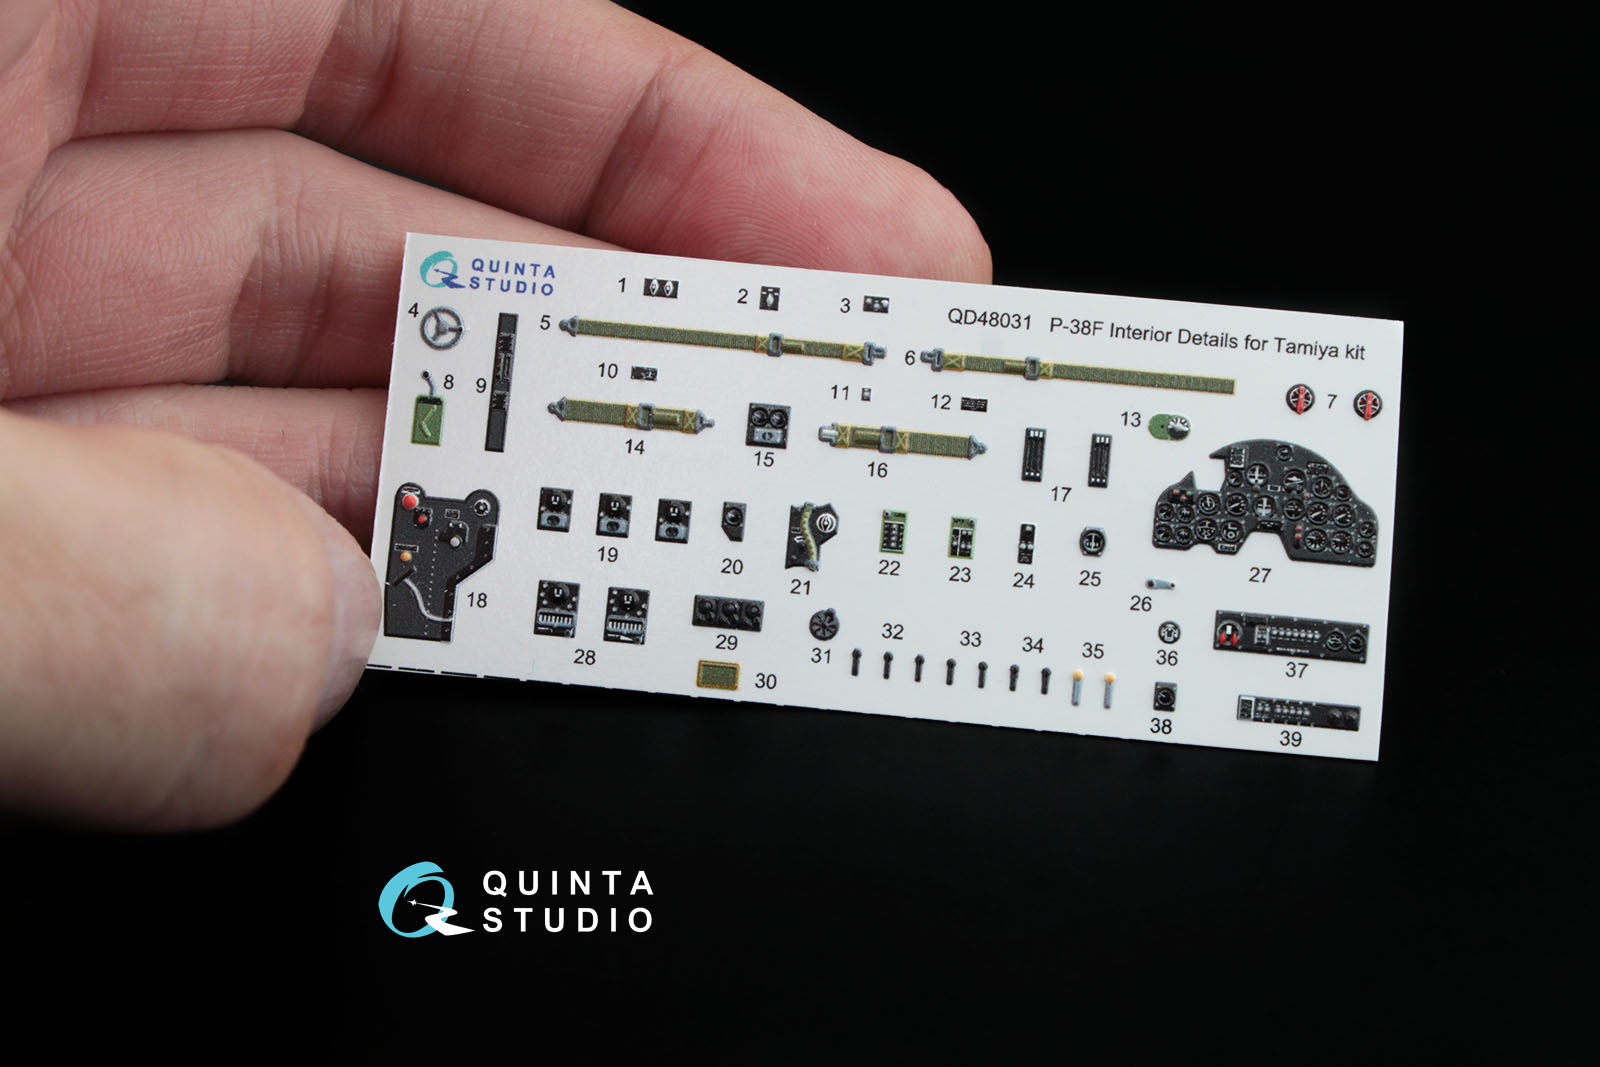 Quinta Studio - 1/48 P38F - QD48031 for Tamiya kit